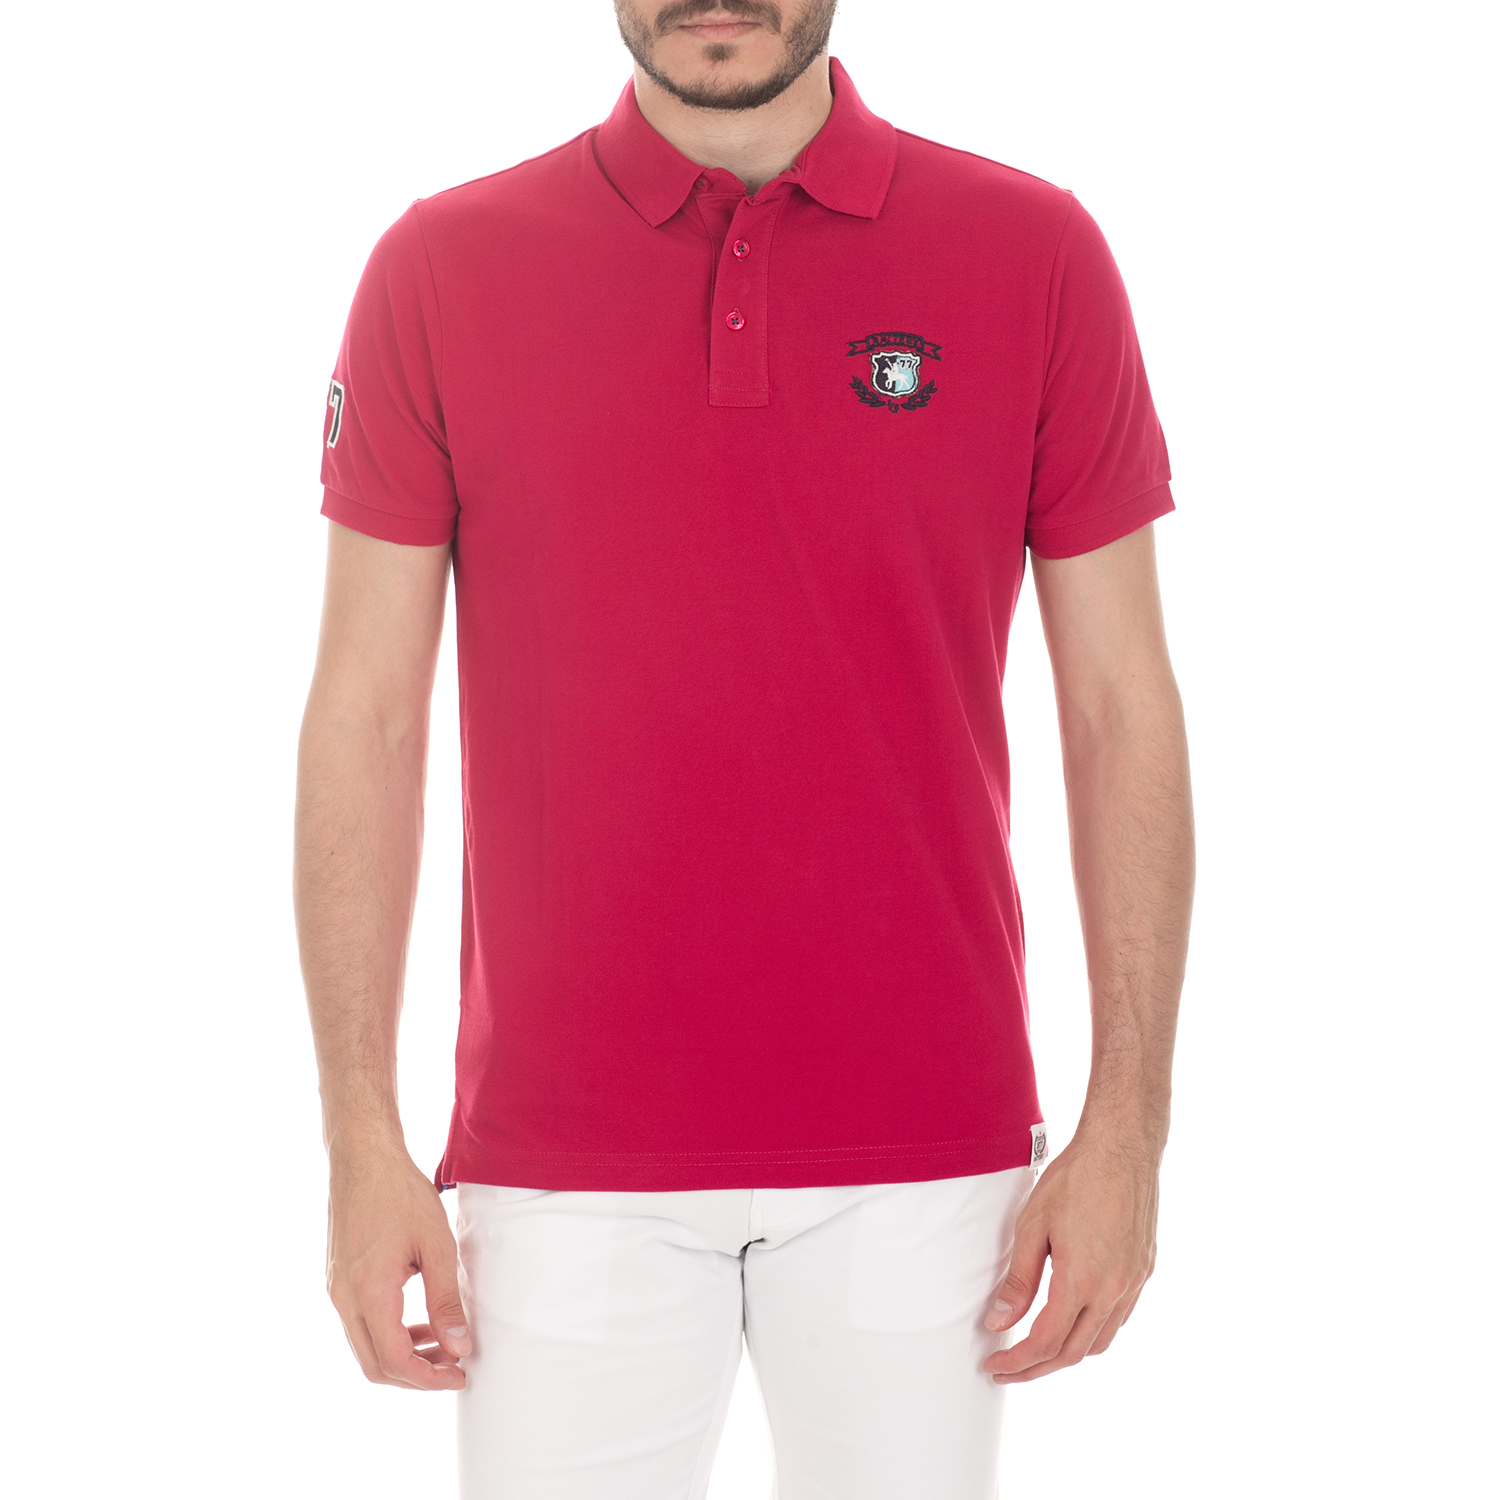 Ανδρικά/Ρούχα/Μπλούζες/Πόλο BATTERY - Ανδρική μπλούζα BATTERY κόκκινη